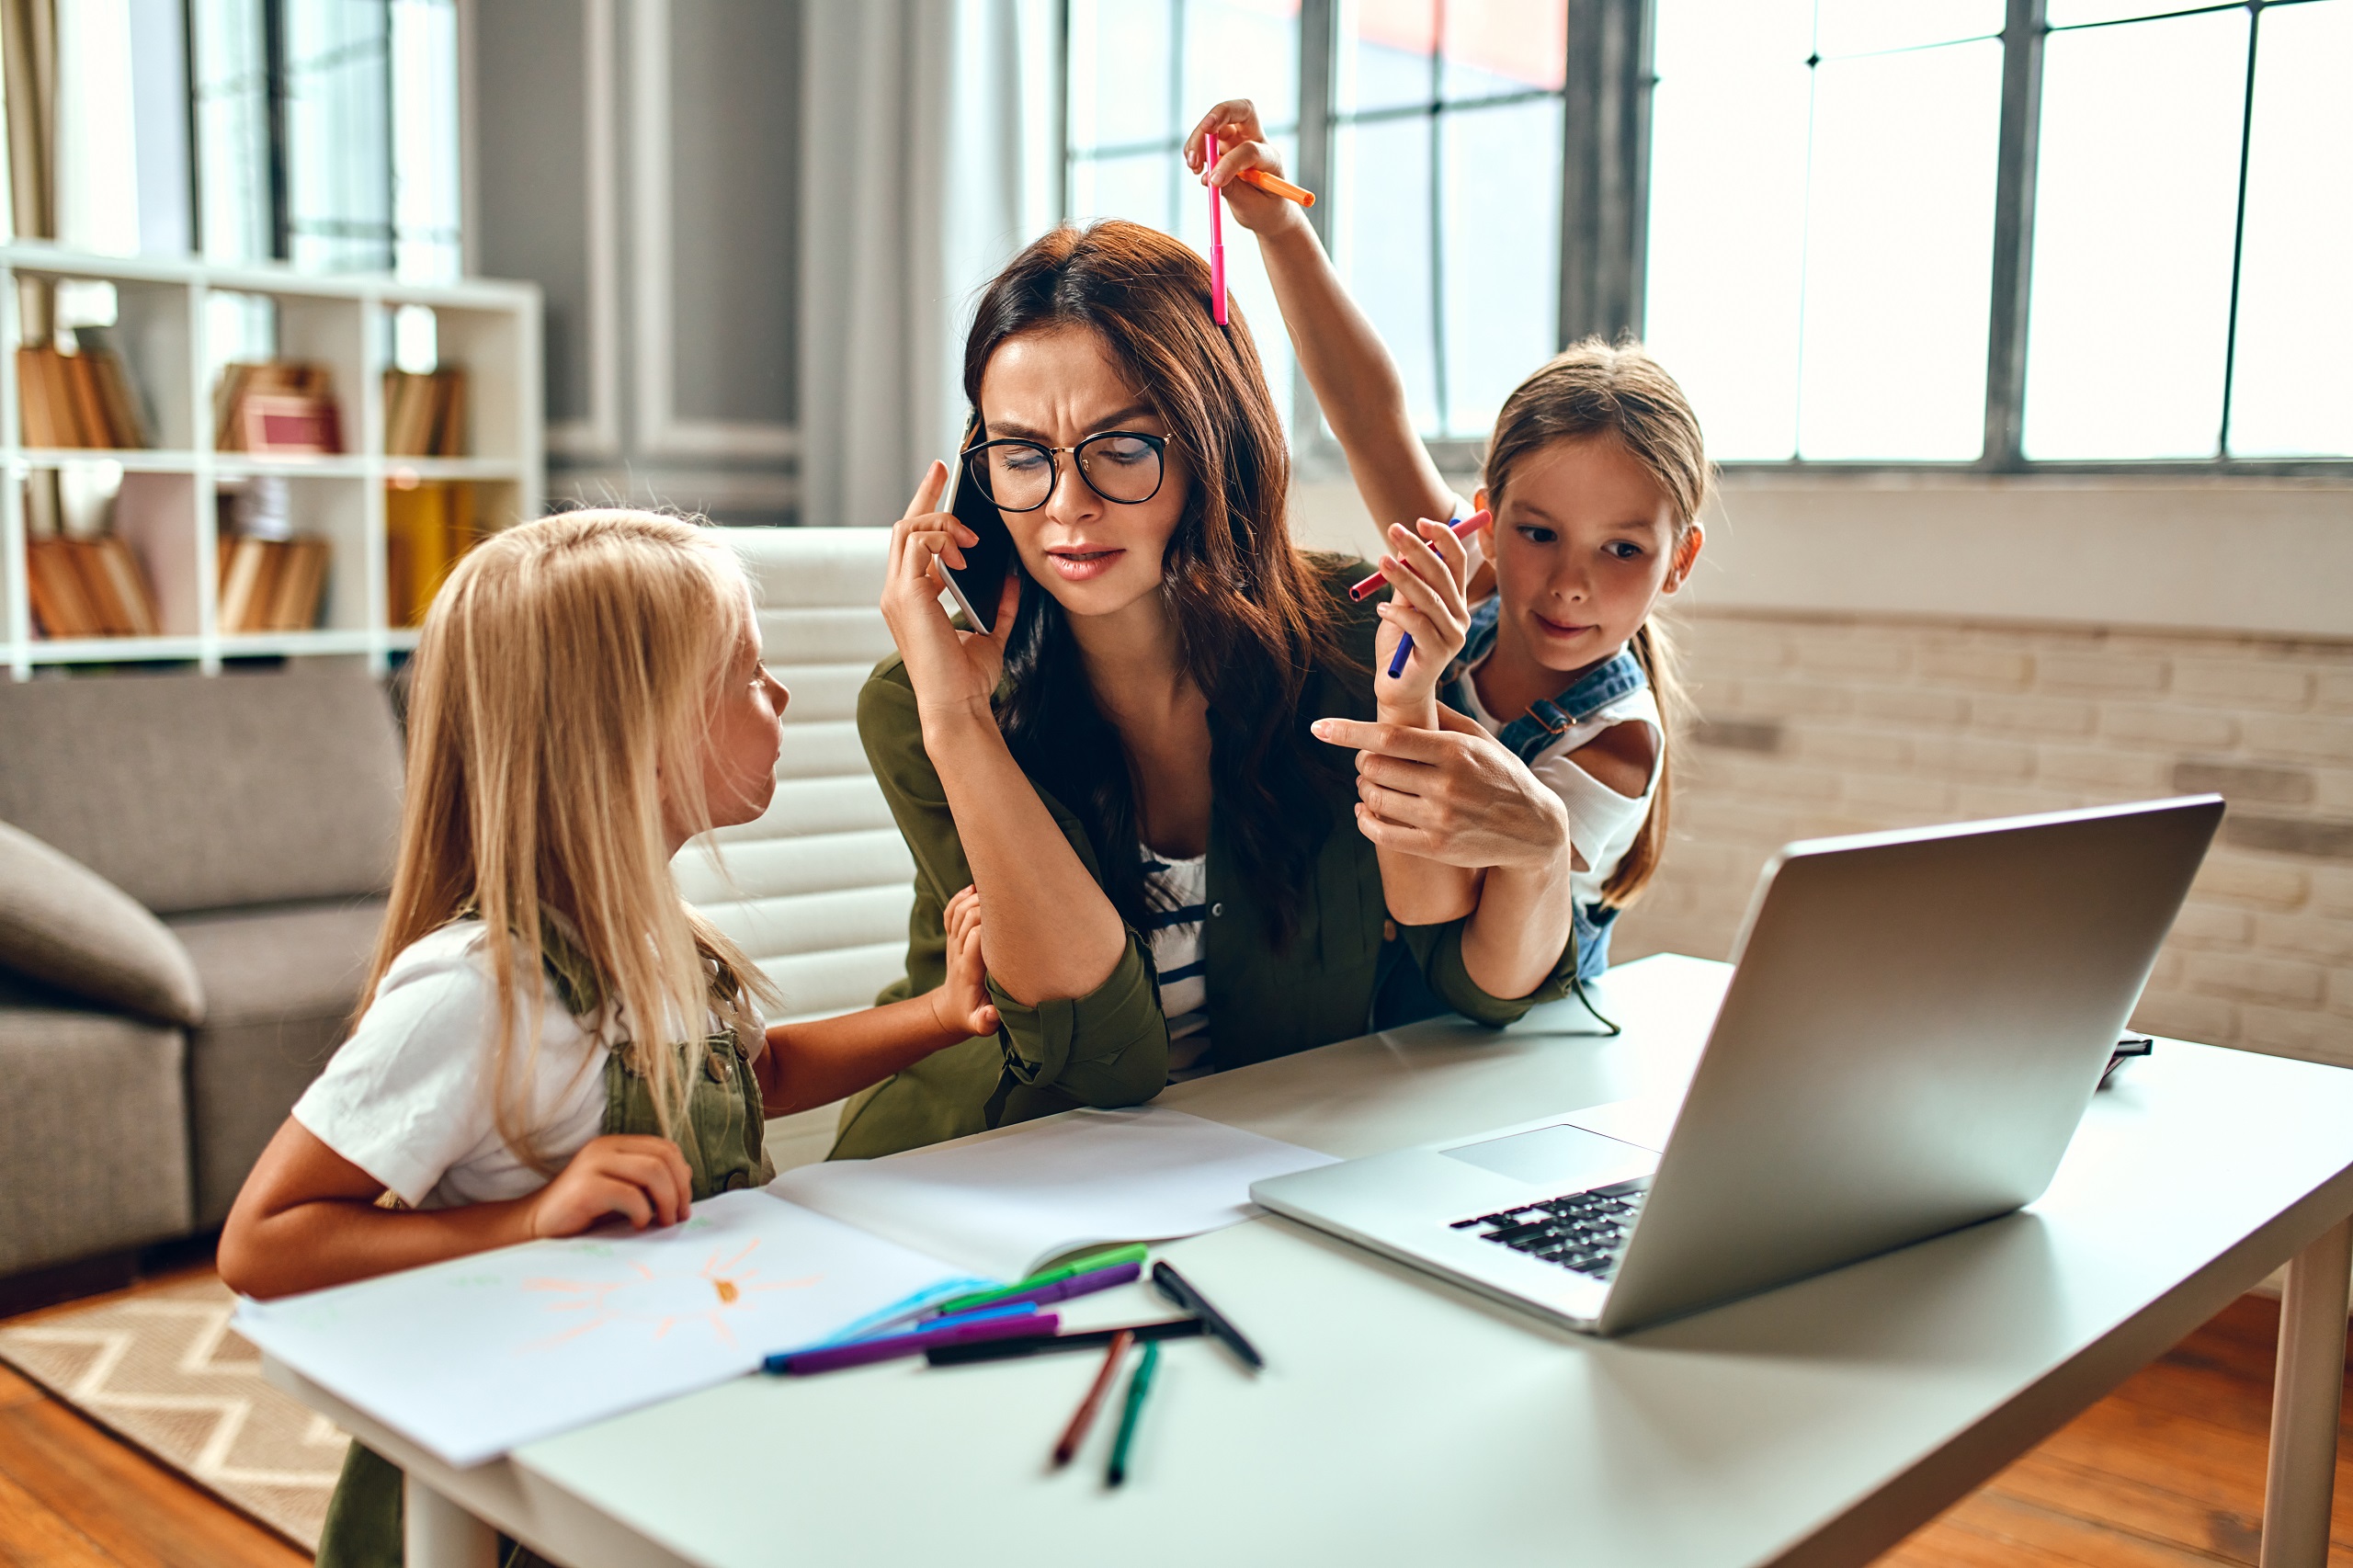 Eine Frau spricht in ein Telefon und arbeitet an einem Laptop. Zwei Kinder buhlen um ihre Aufmerksamkeit. Symbolbild für den Spagat zwischen Familie und Beruf.